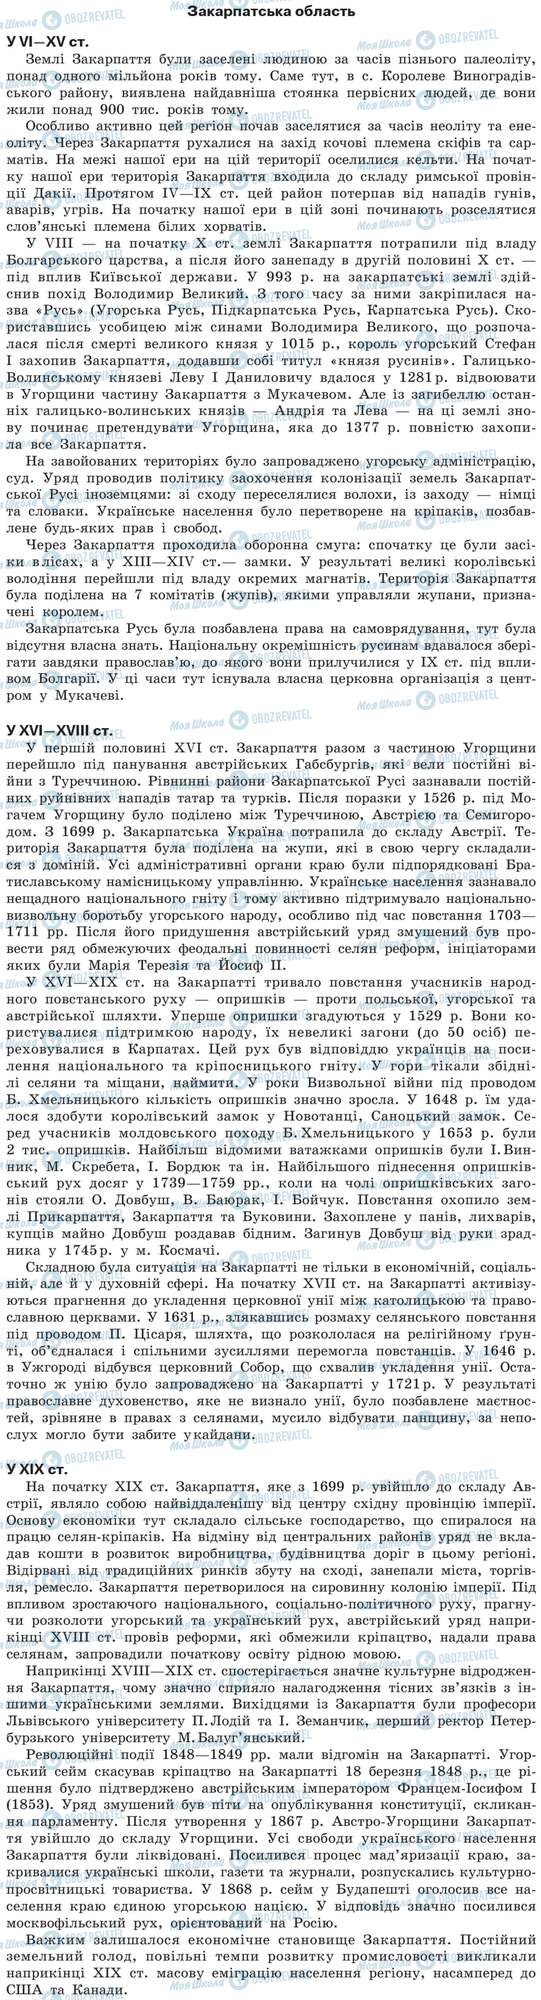 ДПА История Украины 9 класс страница Закарпатська область